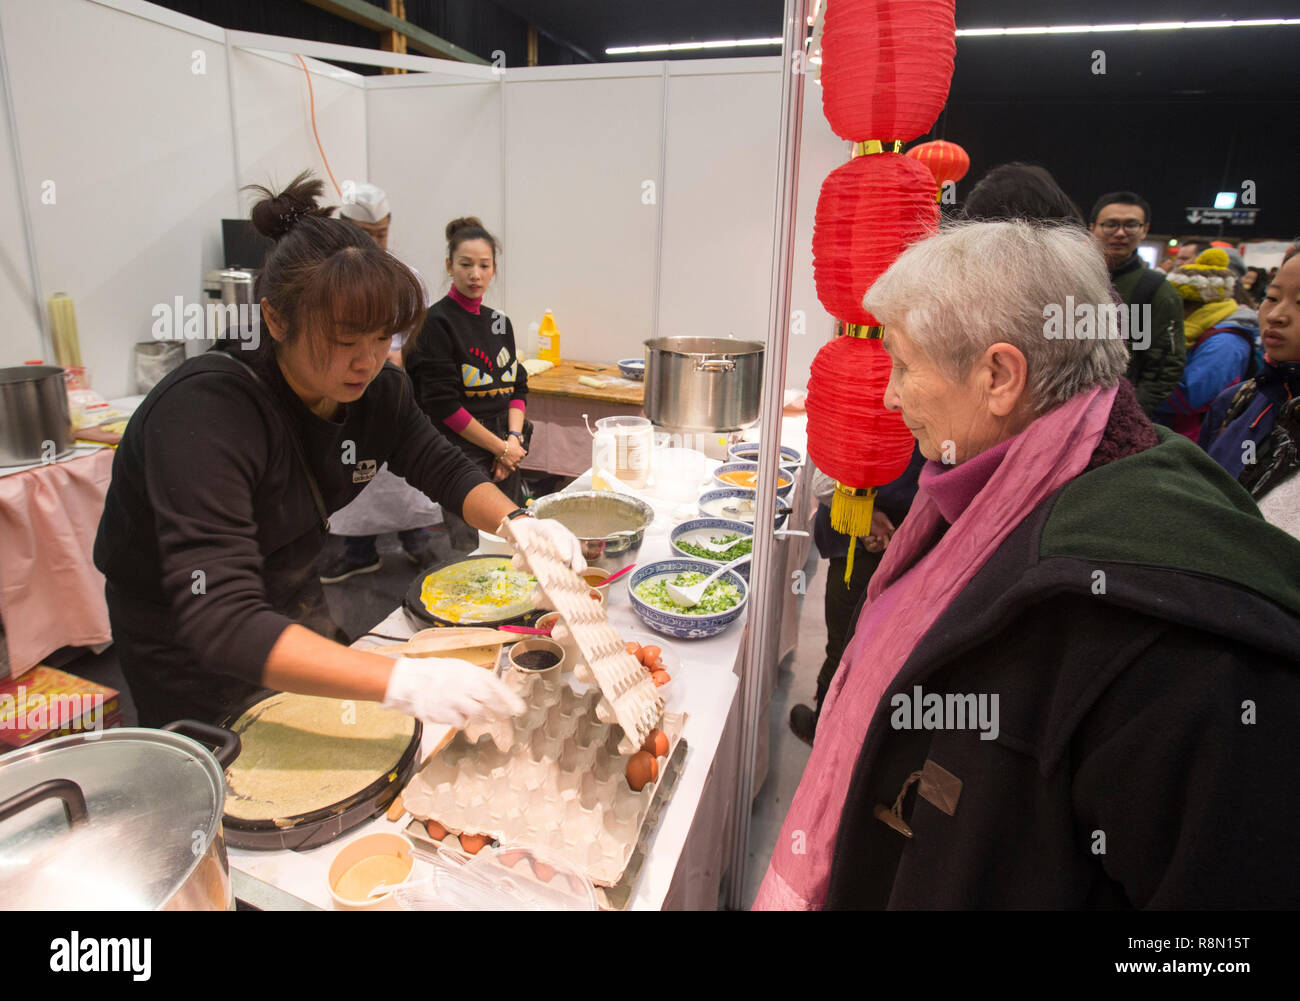 (181216) -- Berne, le 16 décembre 2018 (Xinhua) -- une femme attend de goûter crêpe de Chine au cours de la nourriture chinoise Culture Festival à Berne, capitale de la Suisse, le 16 décembre 2018. Le premier Festival de la culture alimentaire chinoise a eu lieu le dimanche à l'intérieur de la Bernexpo ici dans la capitale suisse, qui attire plus de 1 000 habitants dans les fêtes de Noël. Les collations chinois ainsi que des spectacles traditionnels, notamment la calligraphie, les chansons et les arts martiaux, au cours de cette journée de festival soutenu par l'ambassade de Chine et parrainé par diverses associations locales. (Xinhua/Xu Jinq Banque D'Images